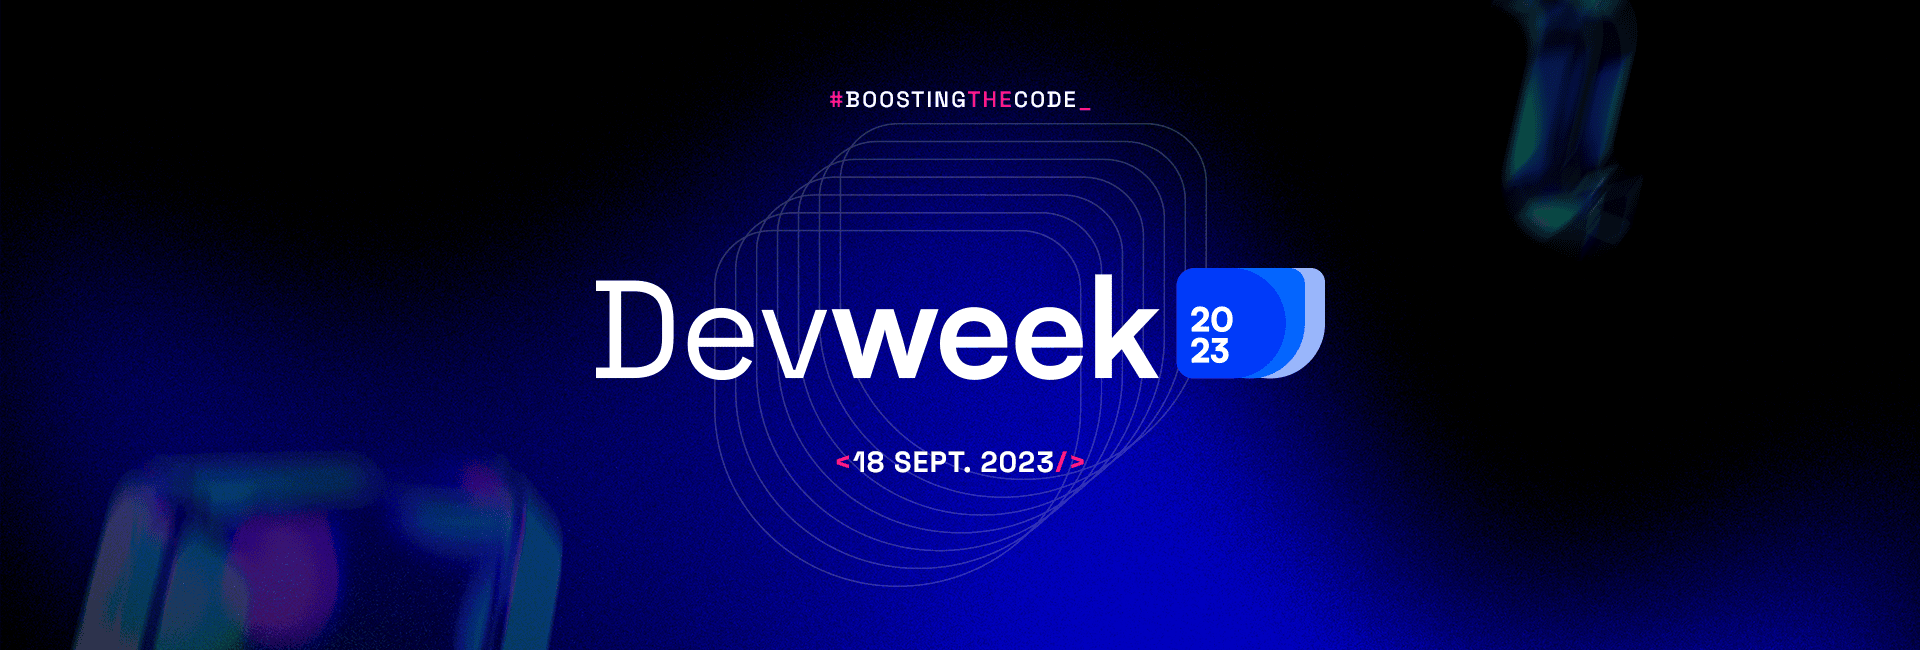 DevWeek 2023: Unleash a spectrum of possibilities